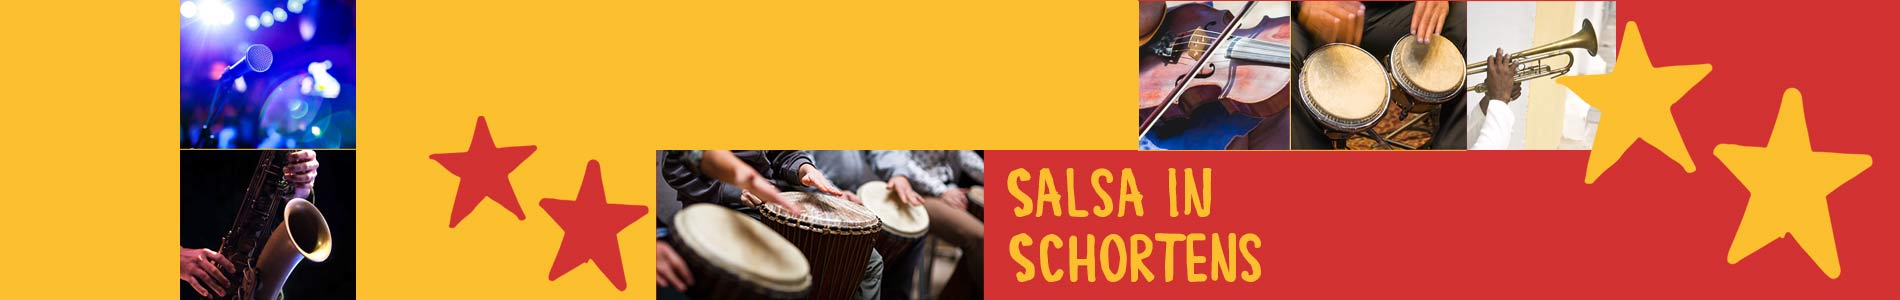 Salsa in Schortens – Salsa lernen und tanzen, Tanzkurse, Partys, Veranstaltungen